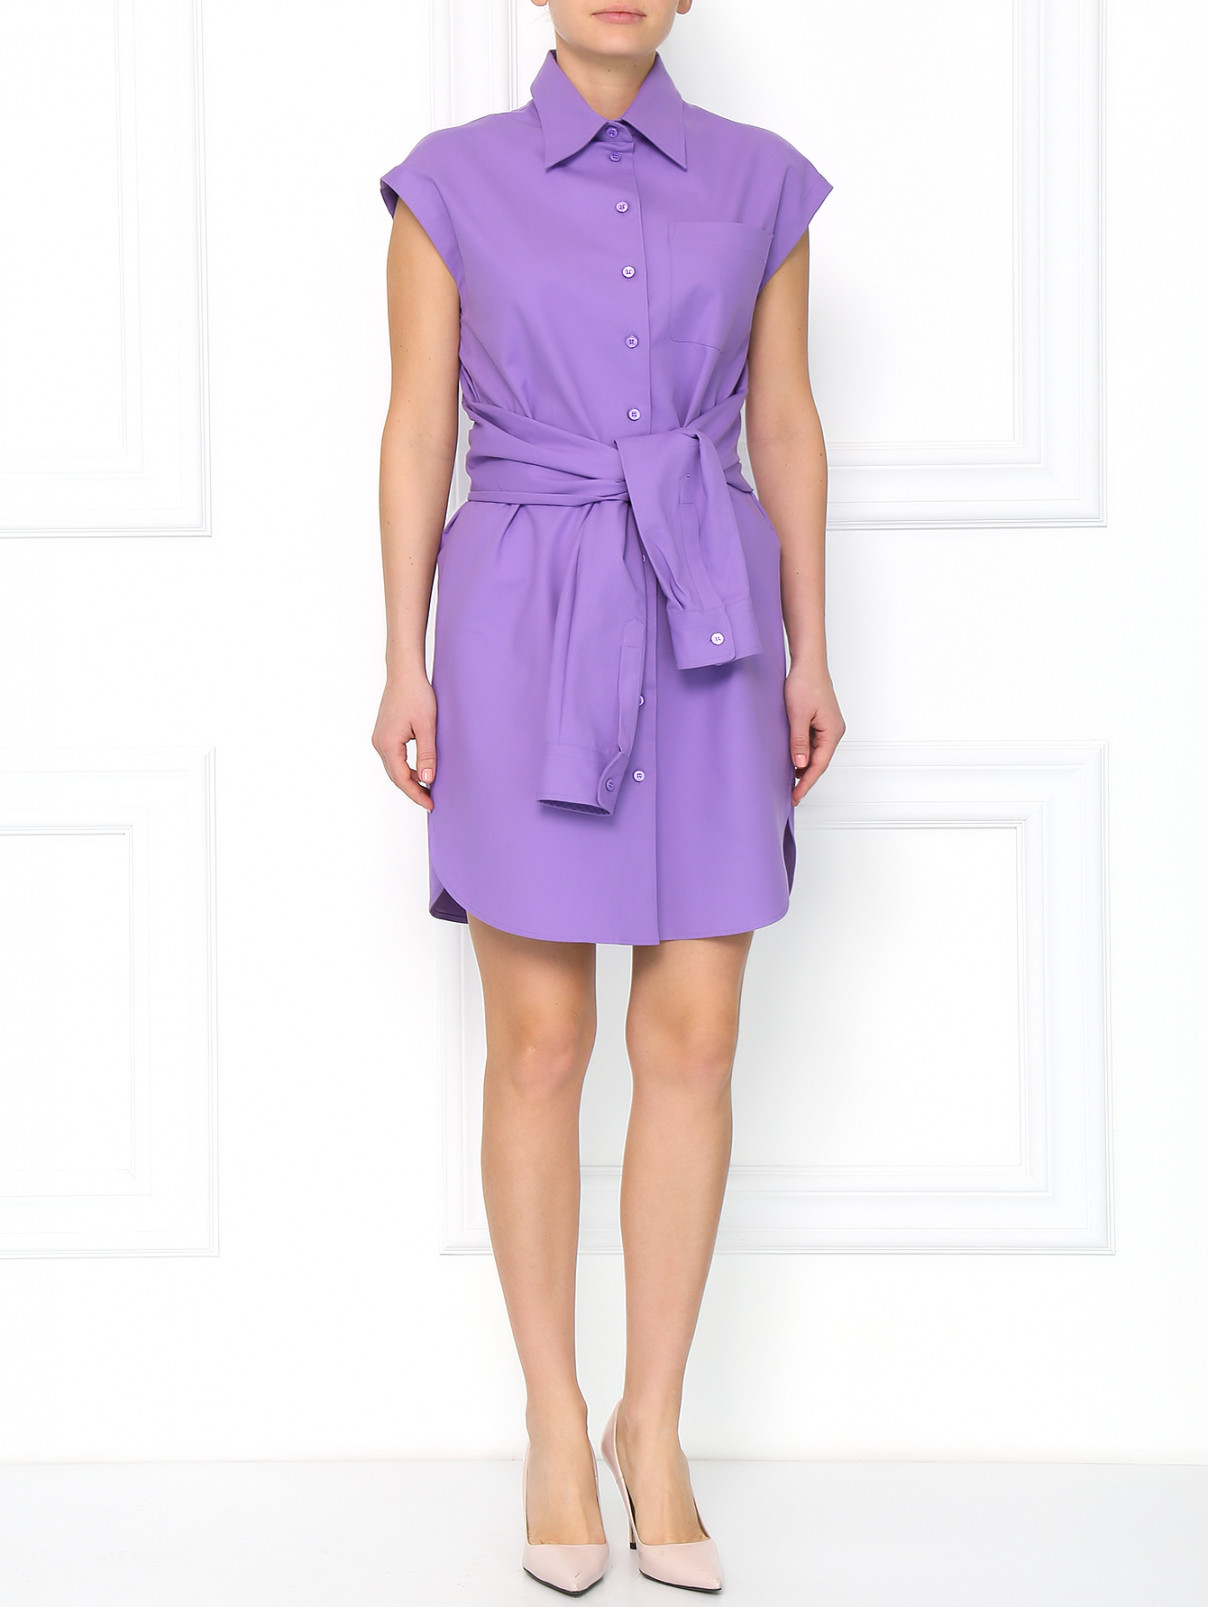 Платье-рубашка из хлопка Moschino  –  Модель Общий вид  – Цвет:  Фиолетовый